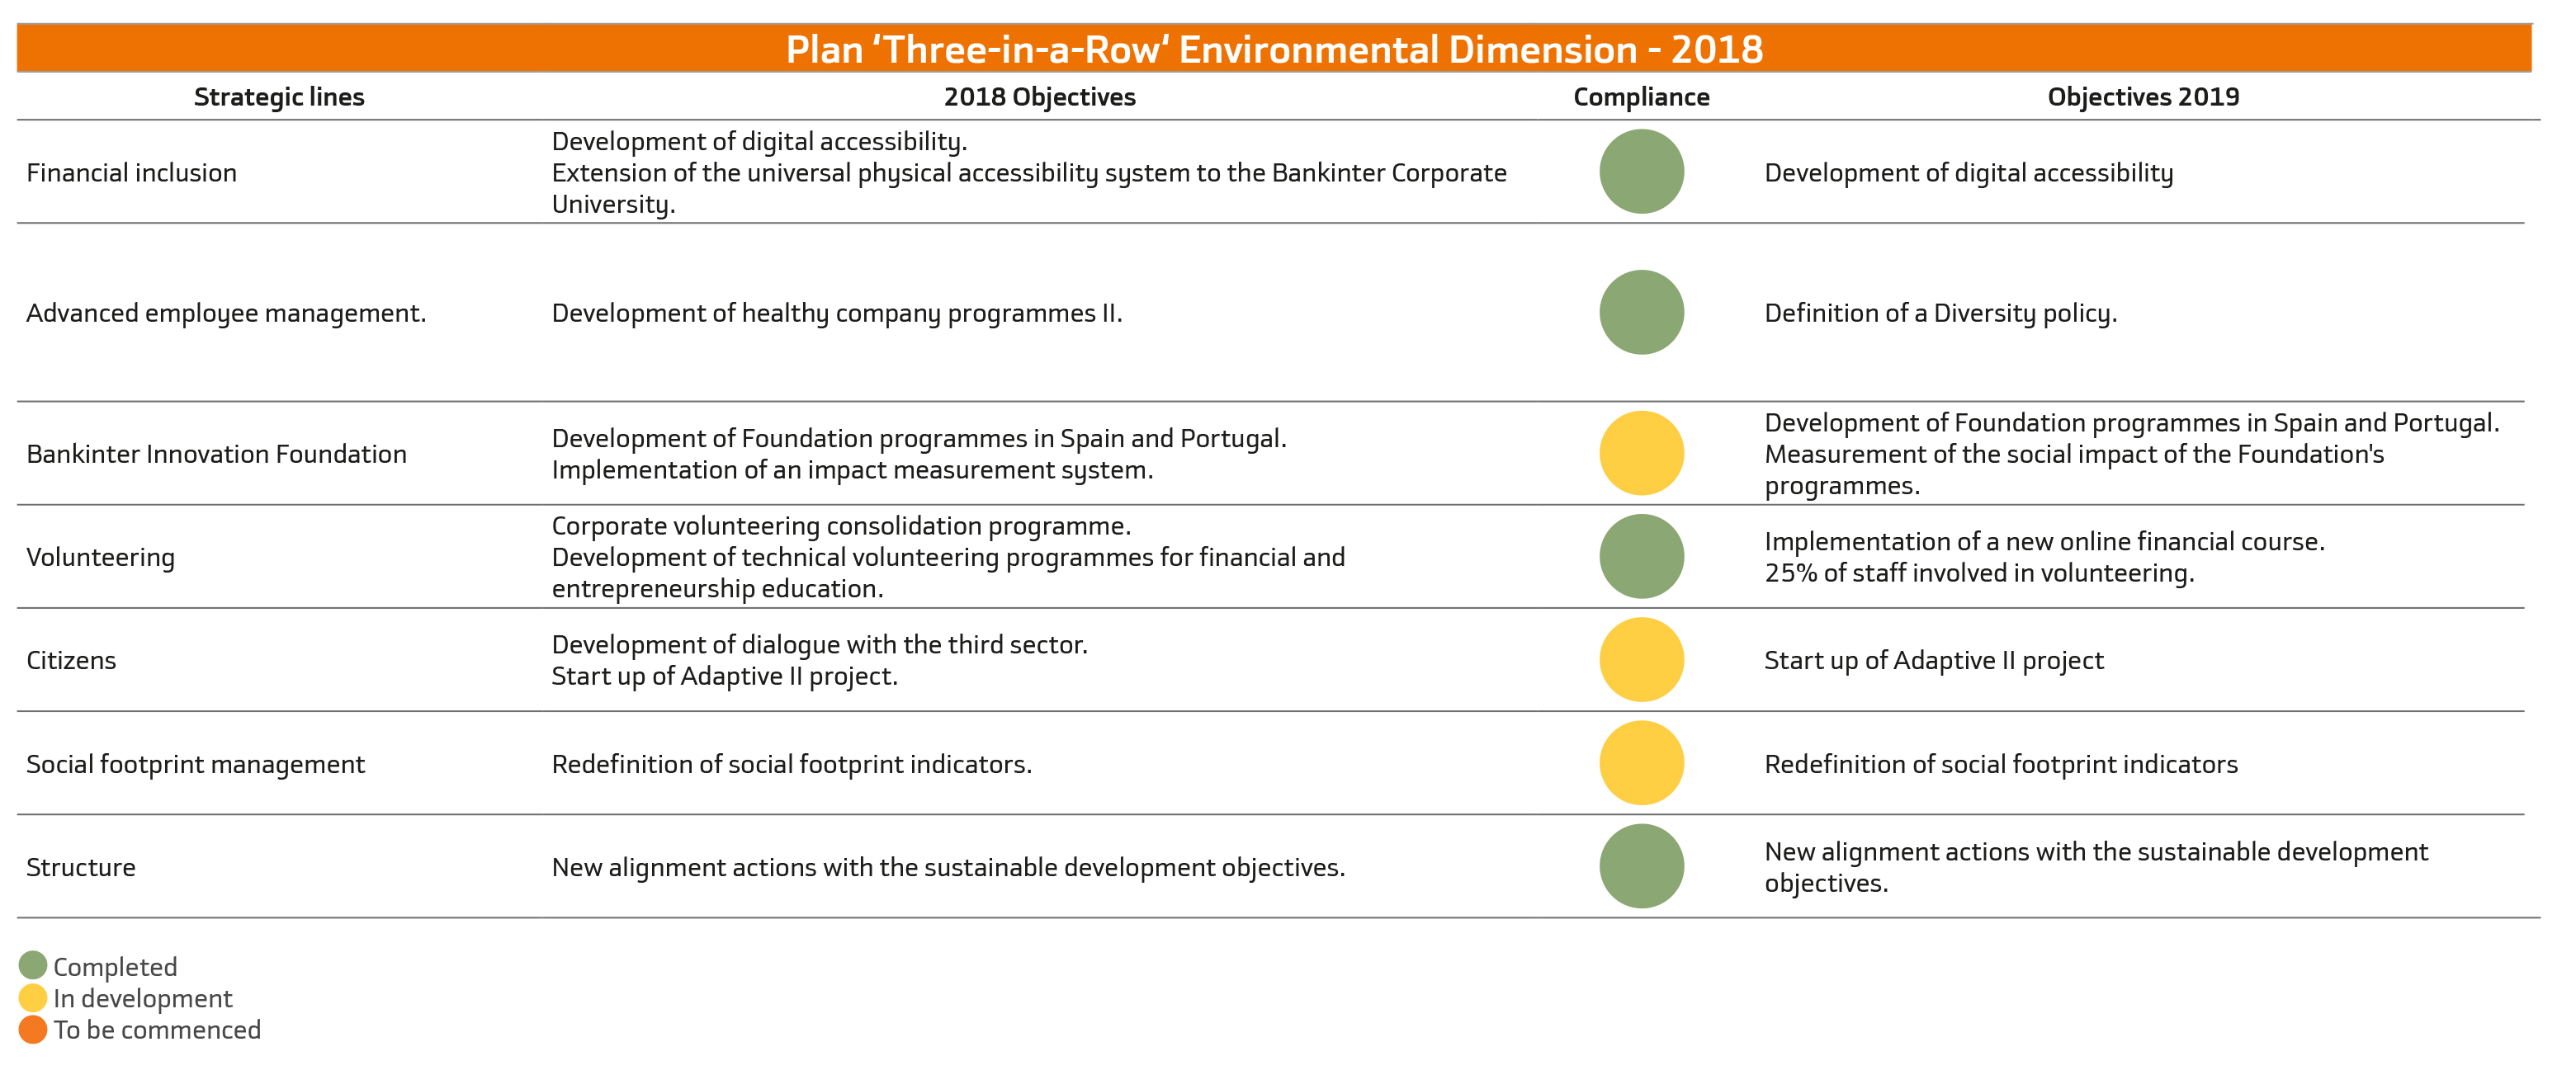 Plan ‘Three-in-a-Row‘ Environmental Dimension - 2018